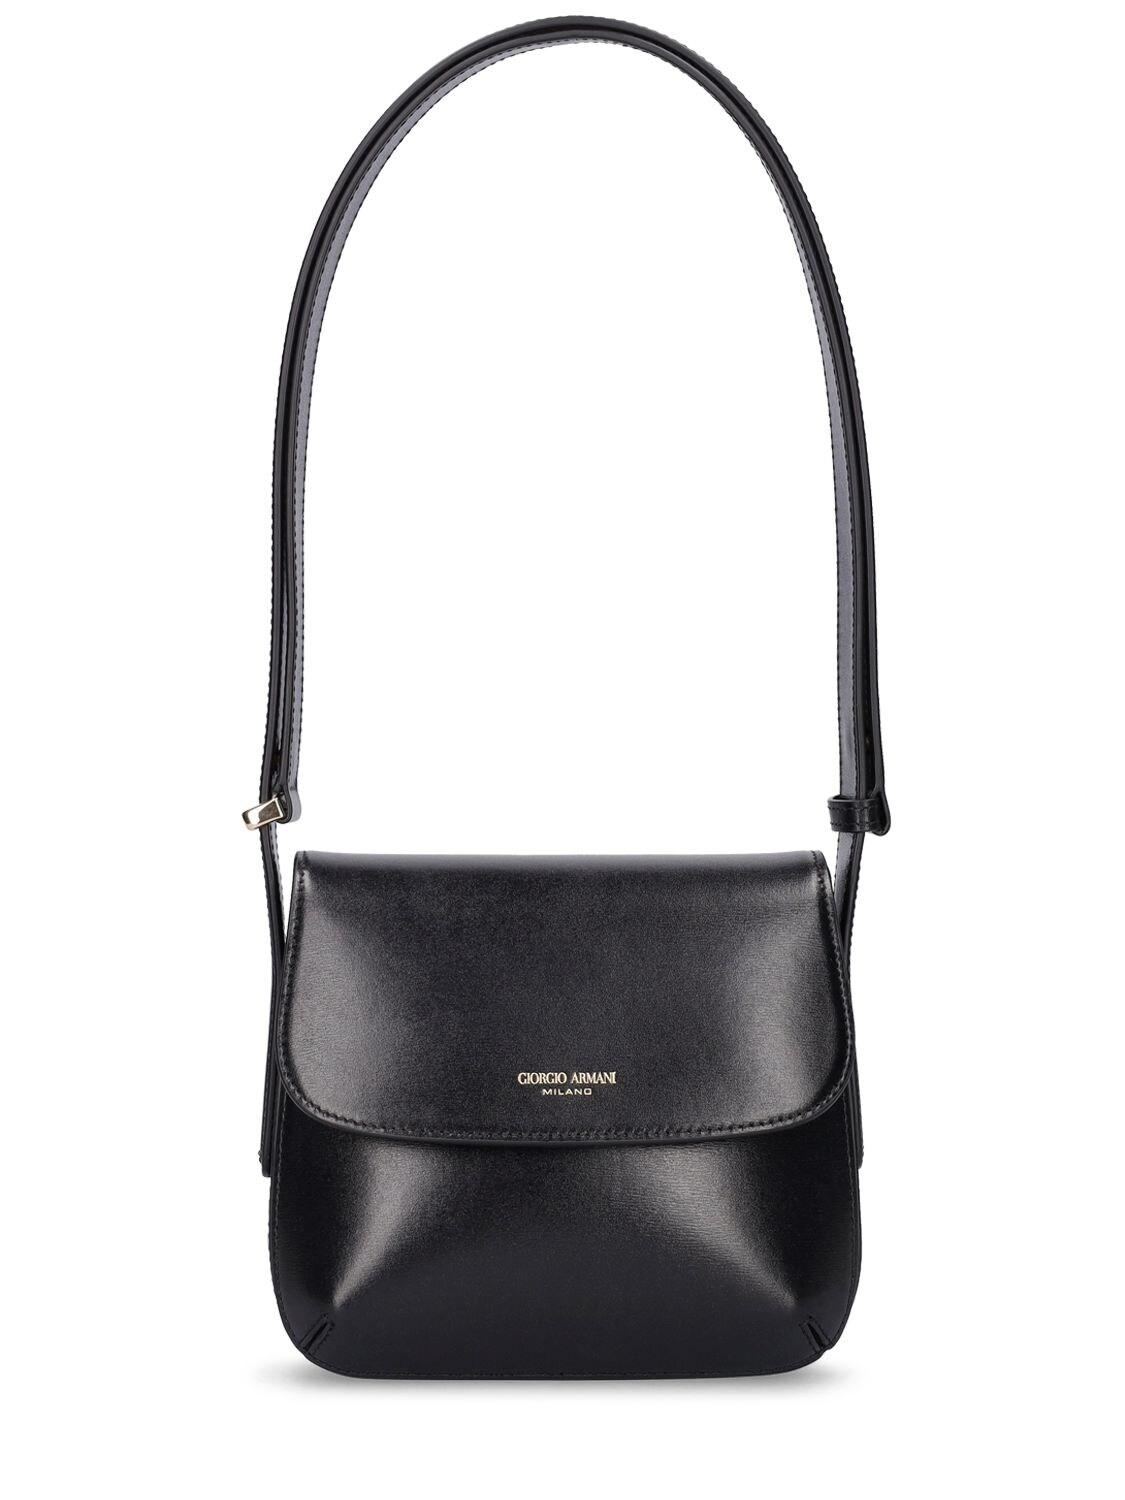 Giorgio Armani La Prima Leather Shoulder Bag in Black | Lyst UK